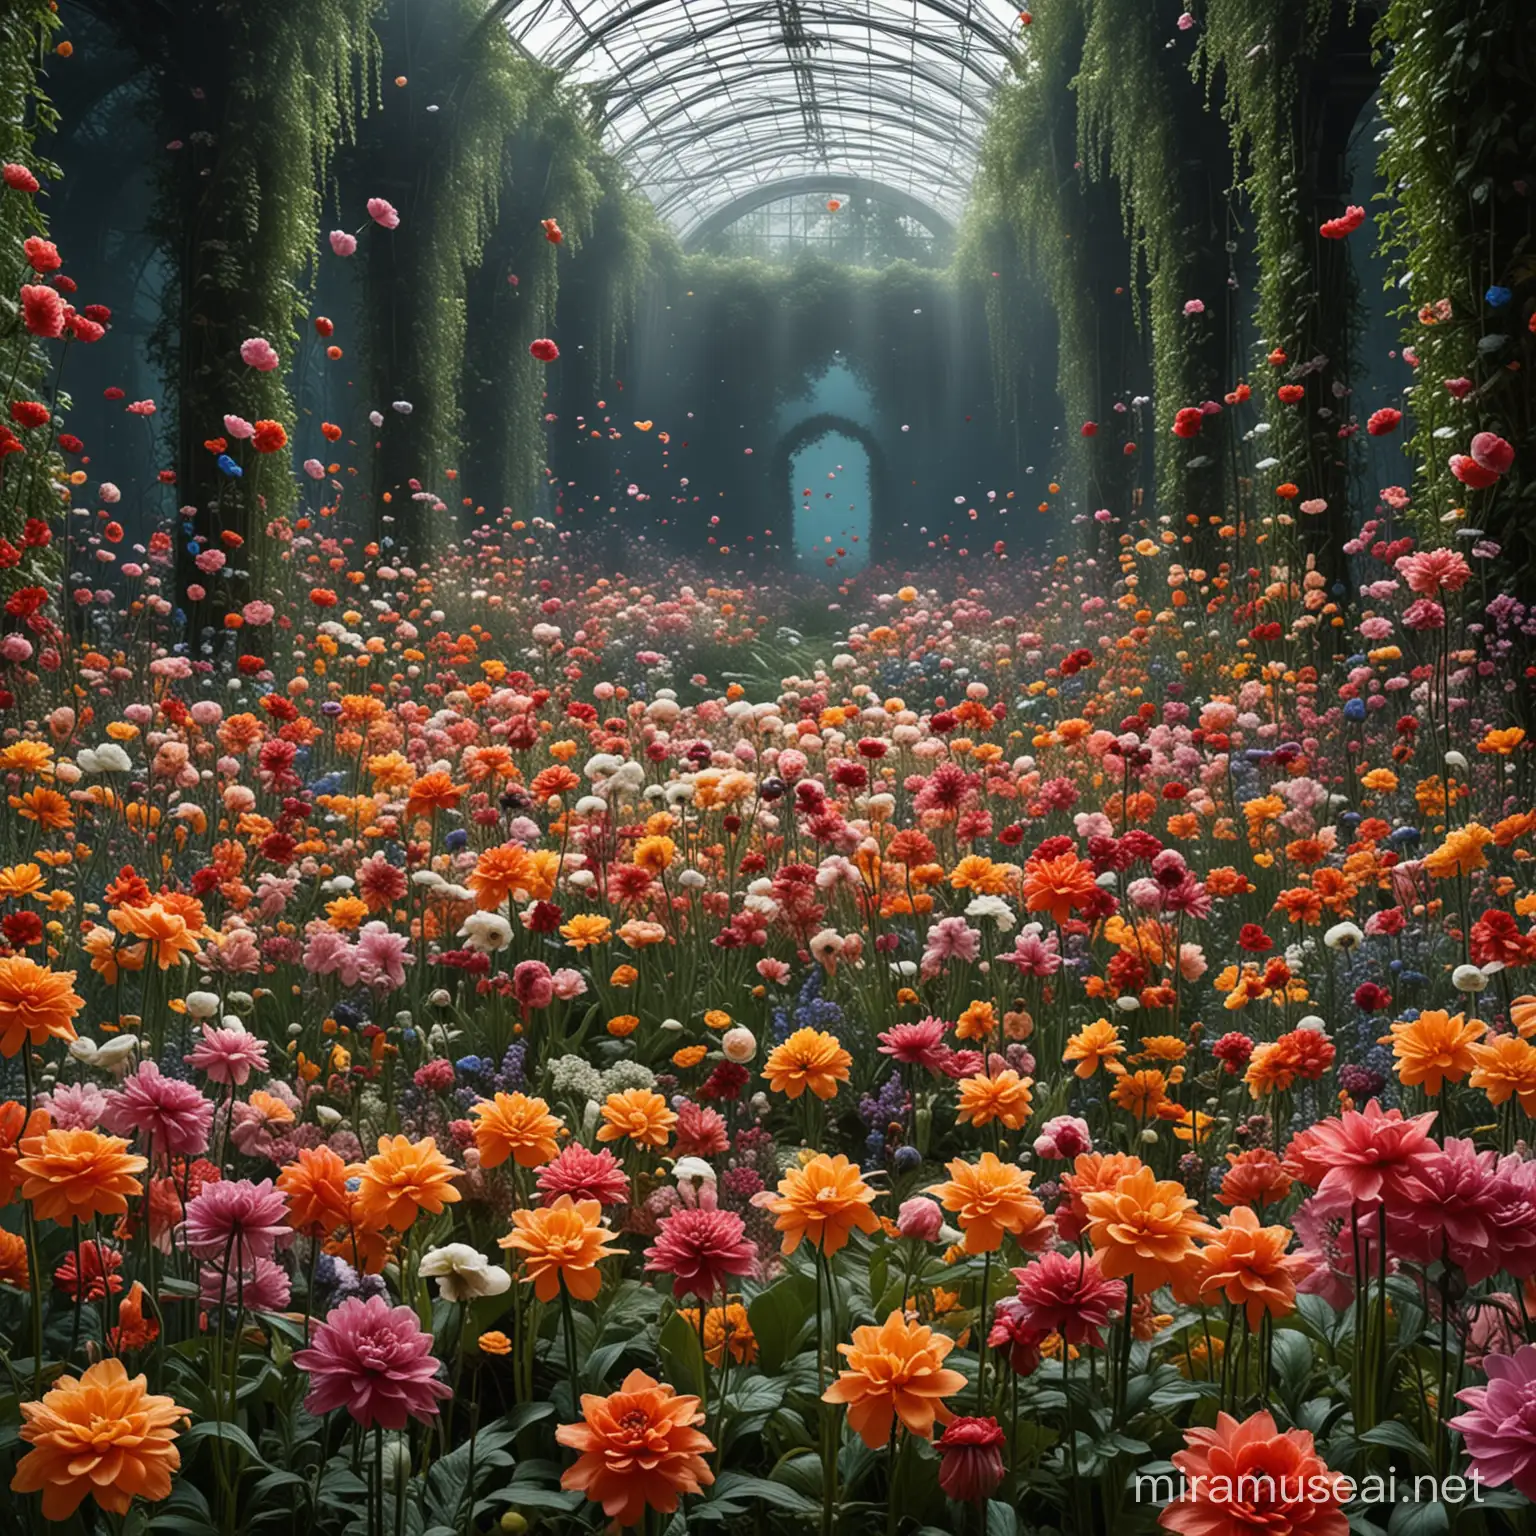 La primera imagen de la exposición muestra un jardín de flores surrealistas. Las formas y colores de las flores han sido reinterpretados por la inteligencia artificial, creando una escena de naturaleza exuberante y sorprendente.